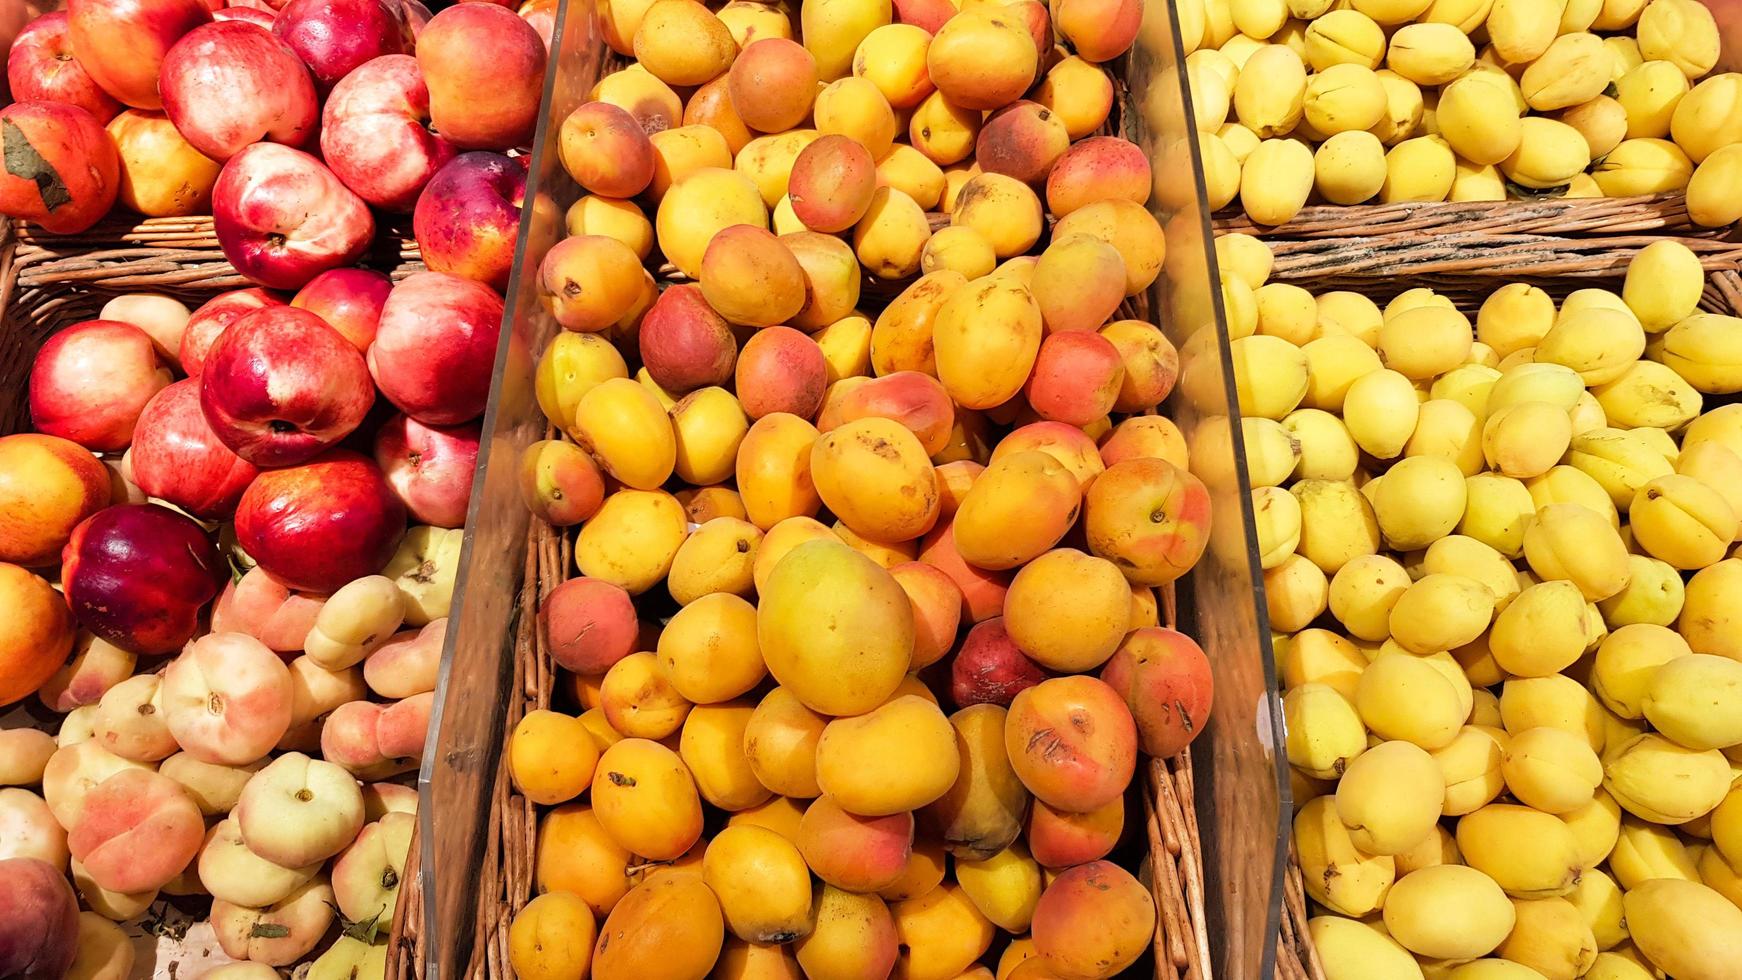 de nombreuses caisses de fruits à vendre sur le marché aux fruits. abricot et pêche dans une vitrine photo